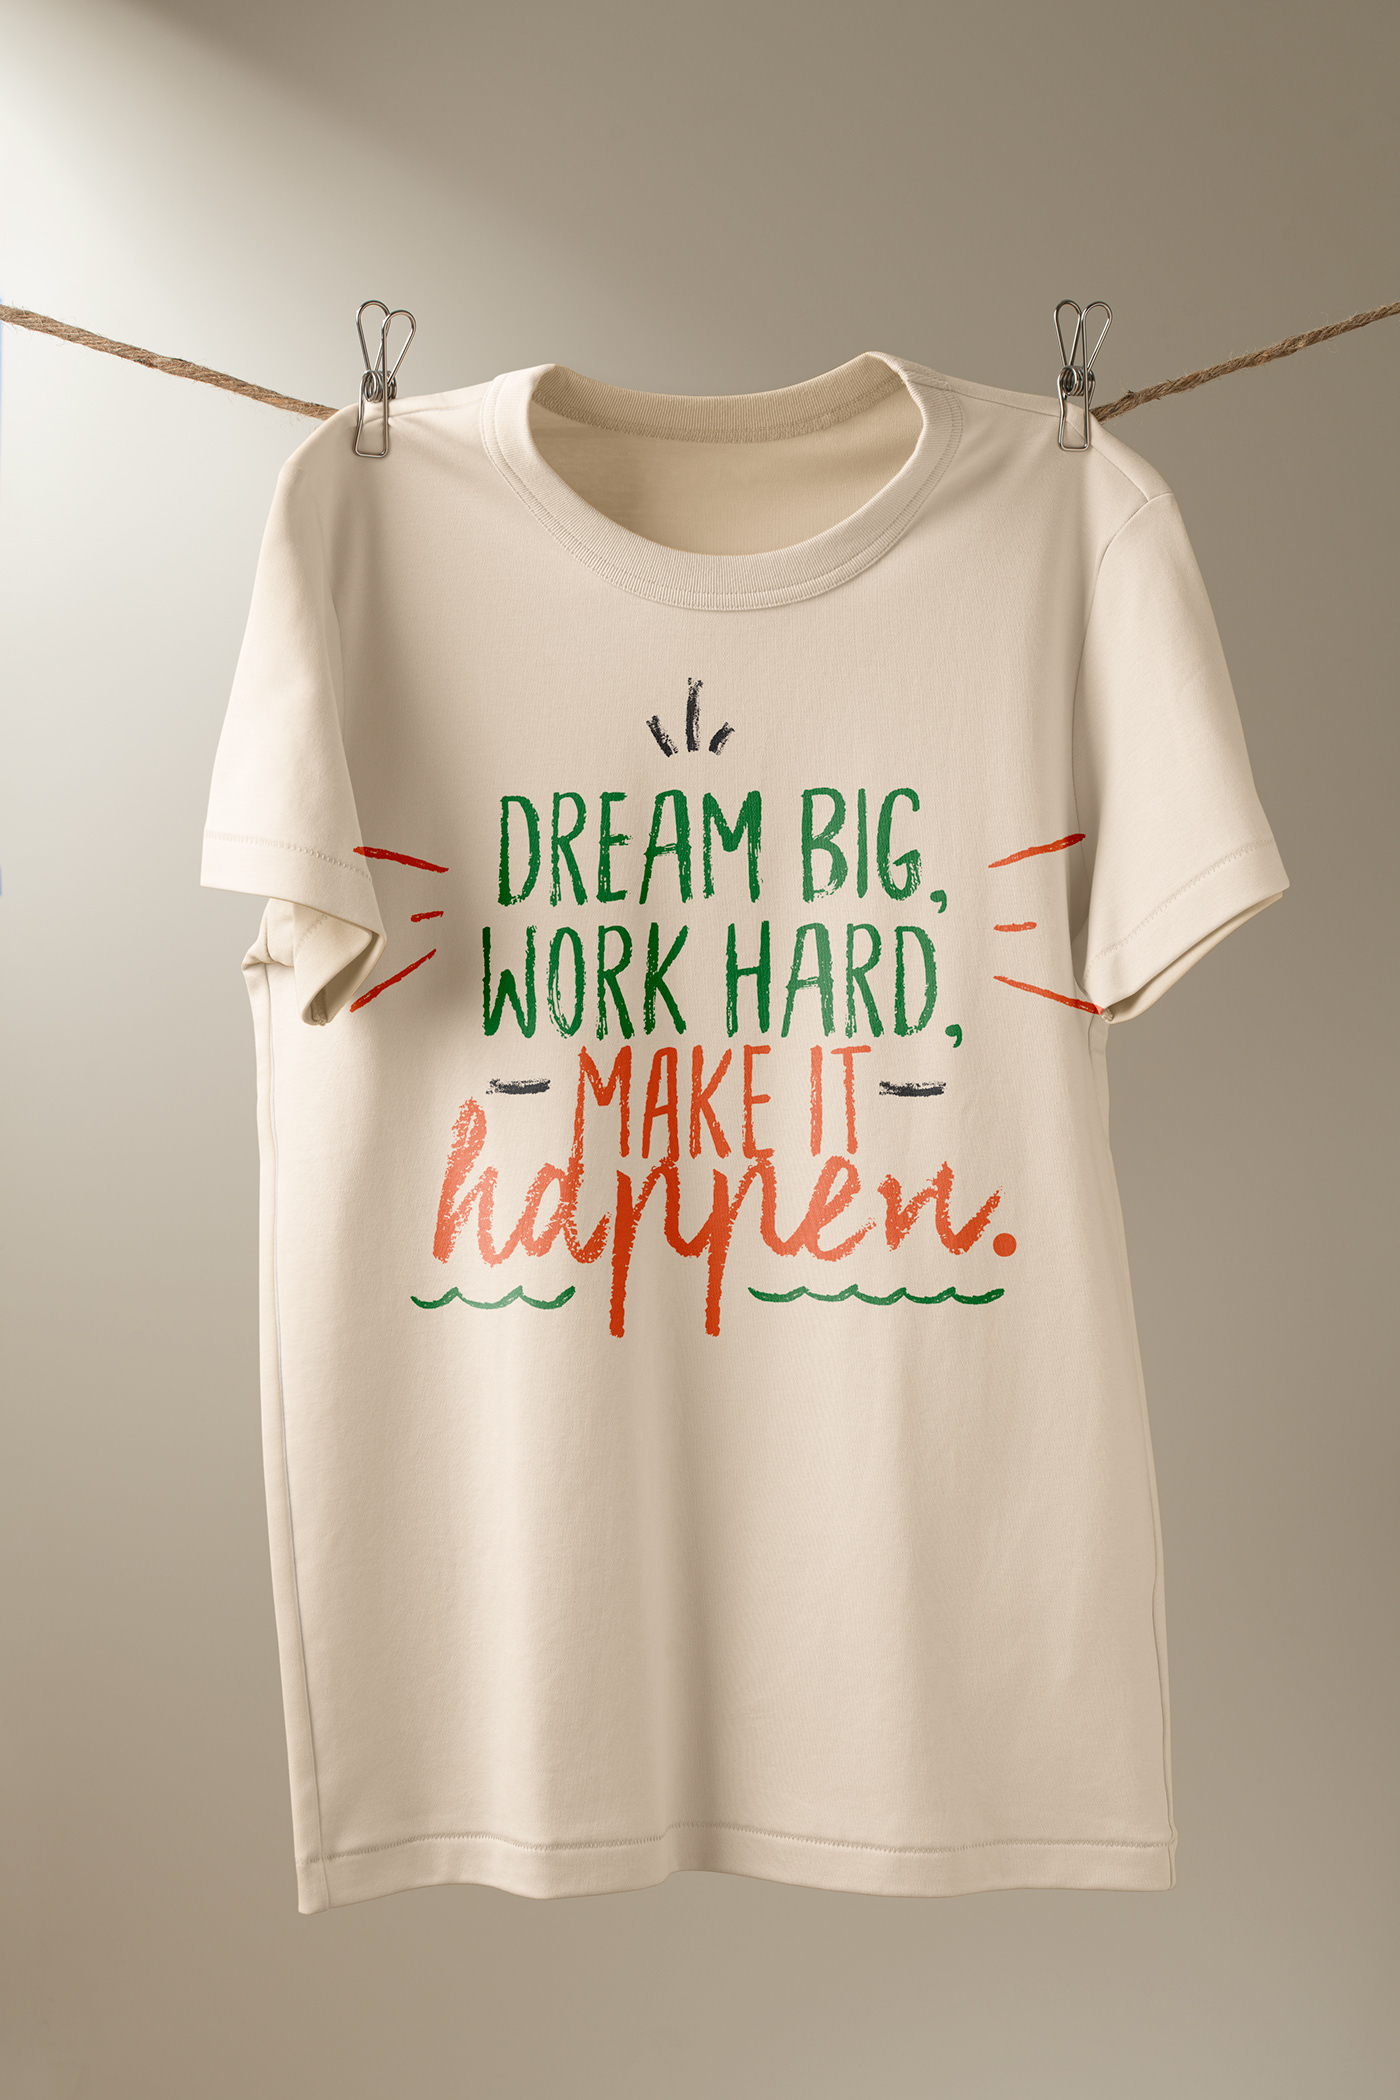 Dream BIG Make it Happen t-shirt tshirt Tshirt Design Tshirt design ideas tshirtdesign tshirts typography   work hard